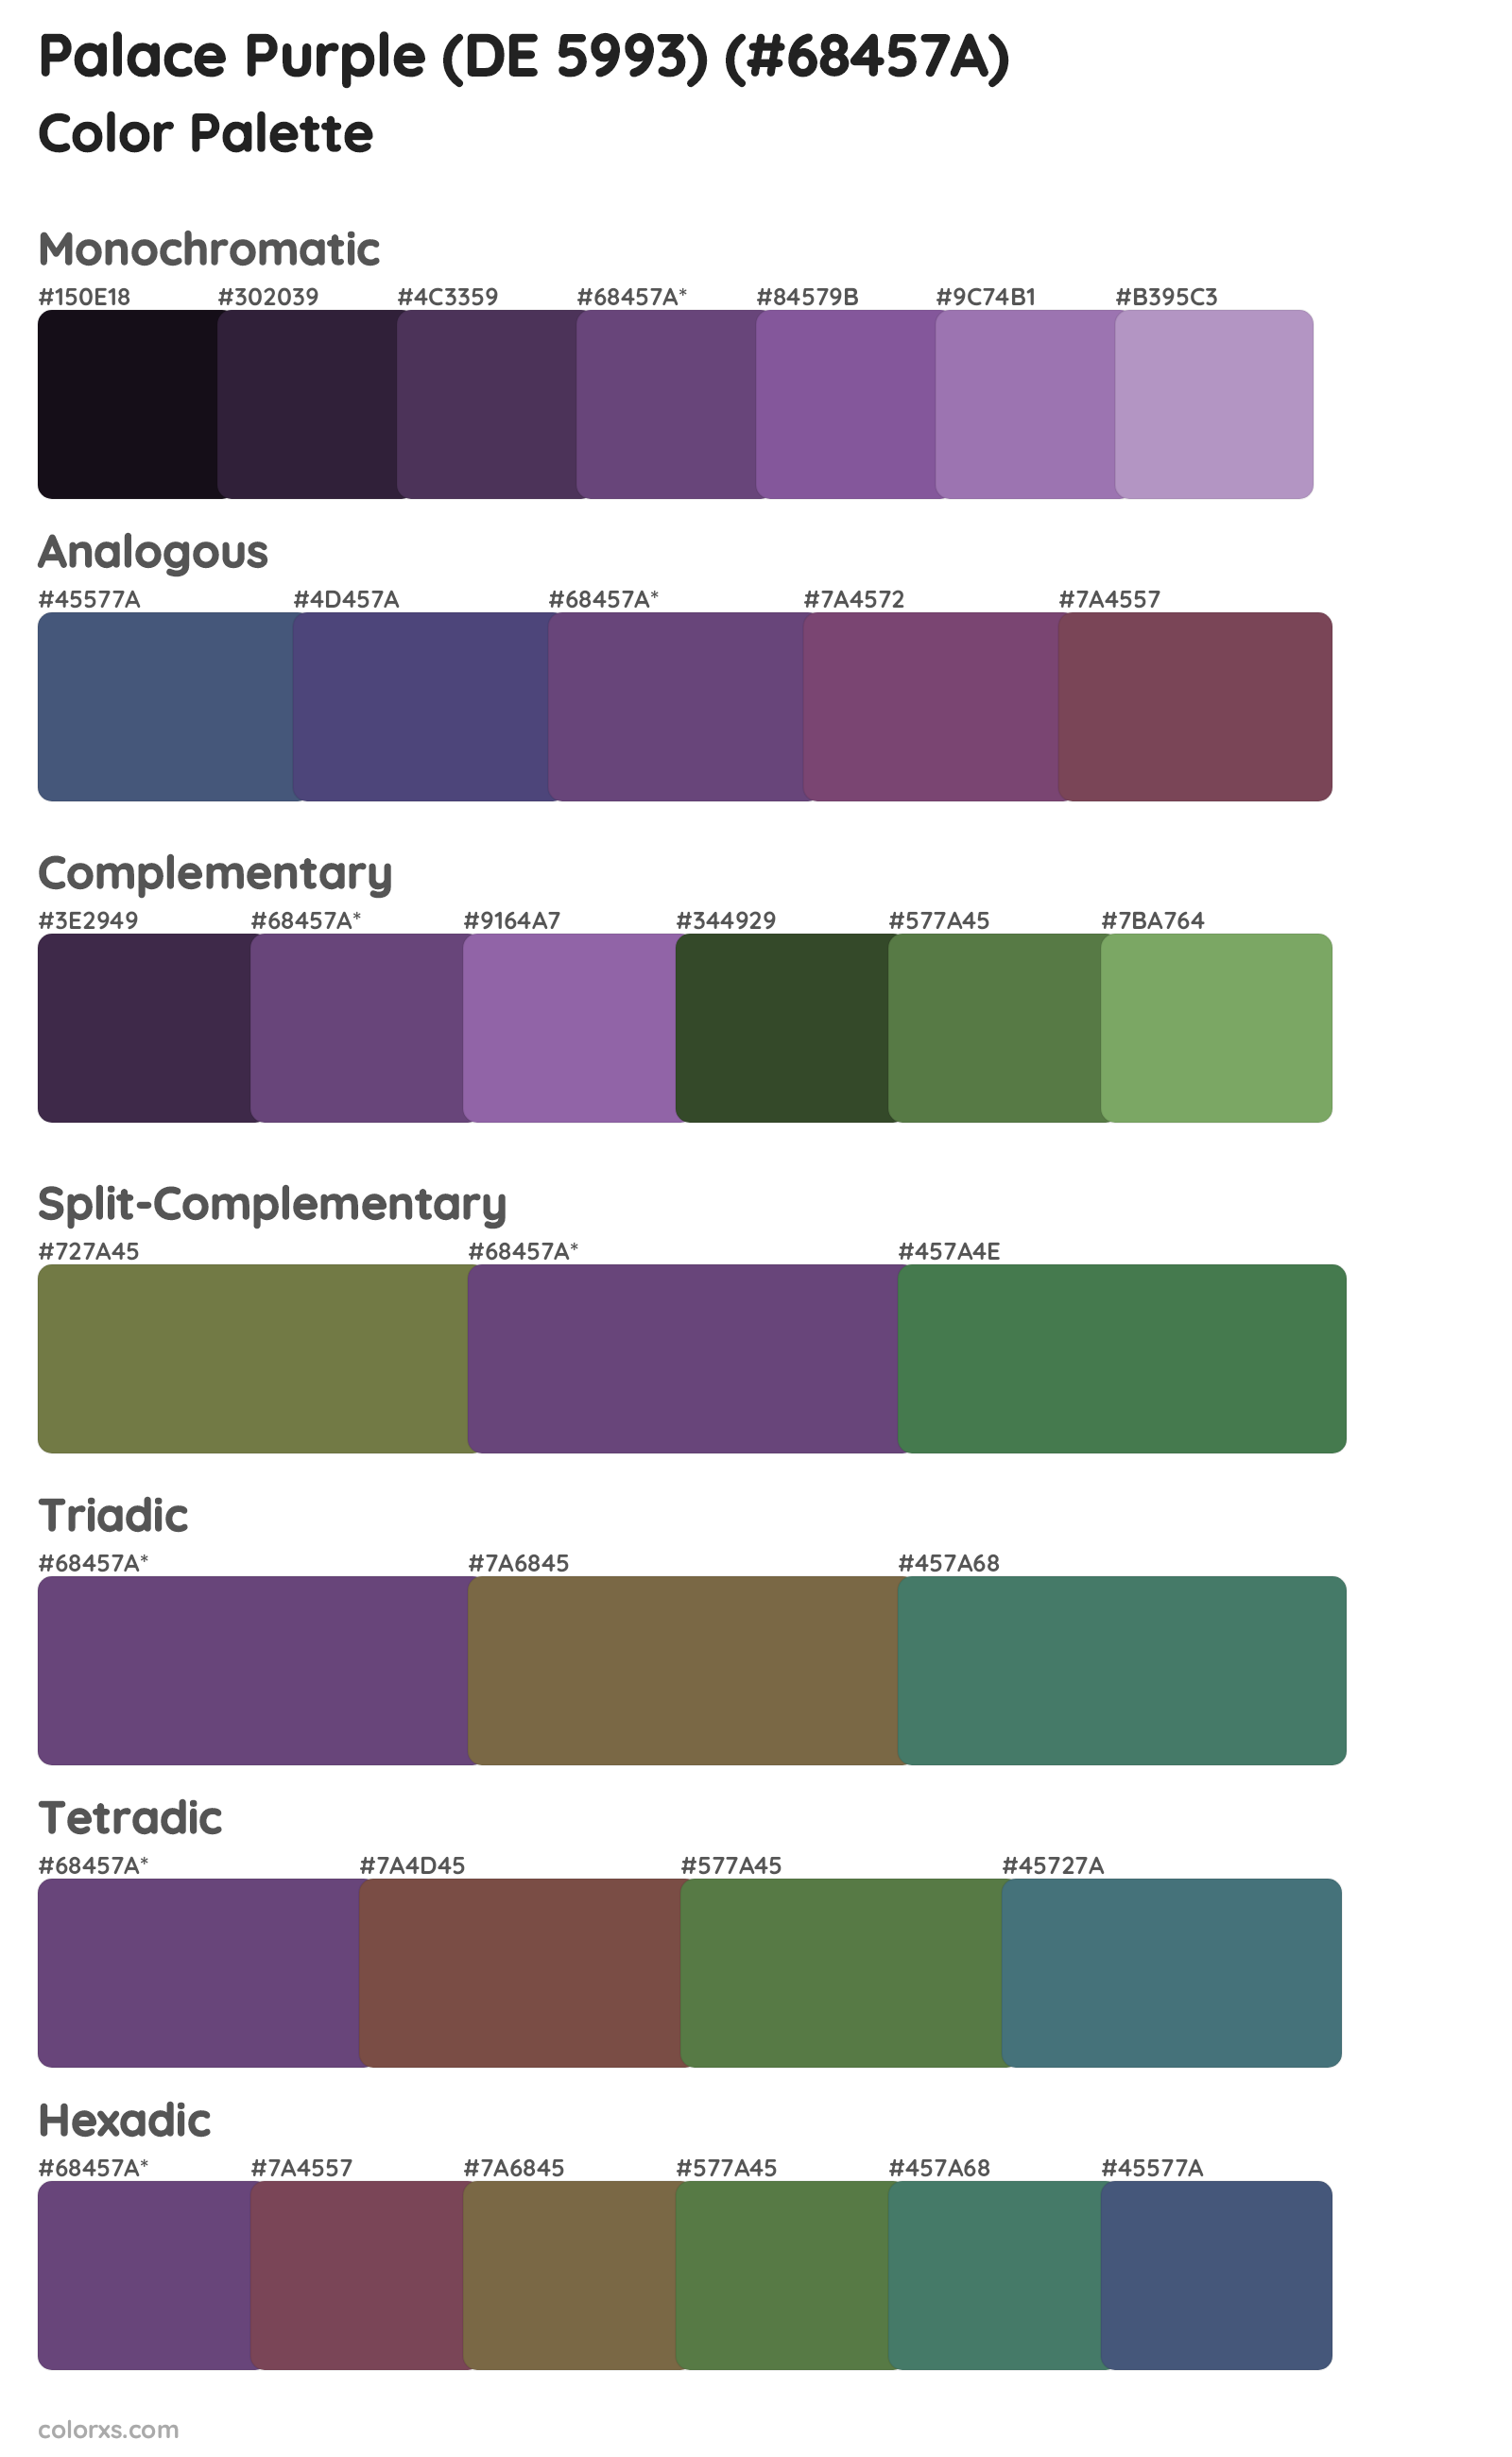 Palace Purple (DE 5993) Color Scheme Palettes